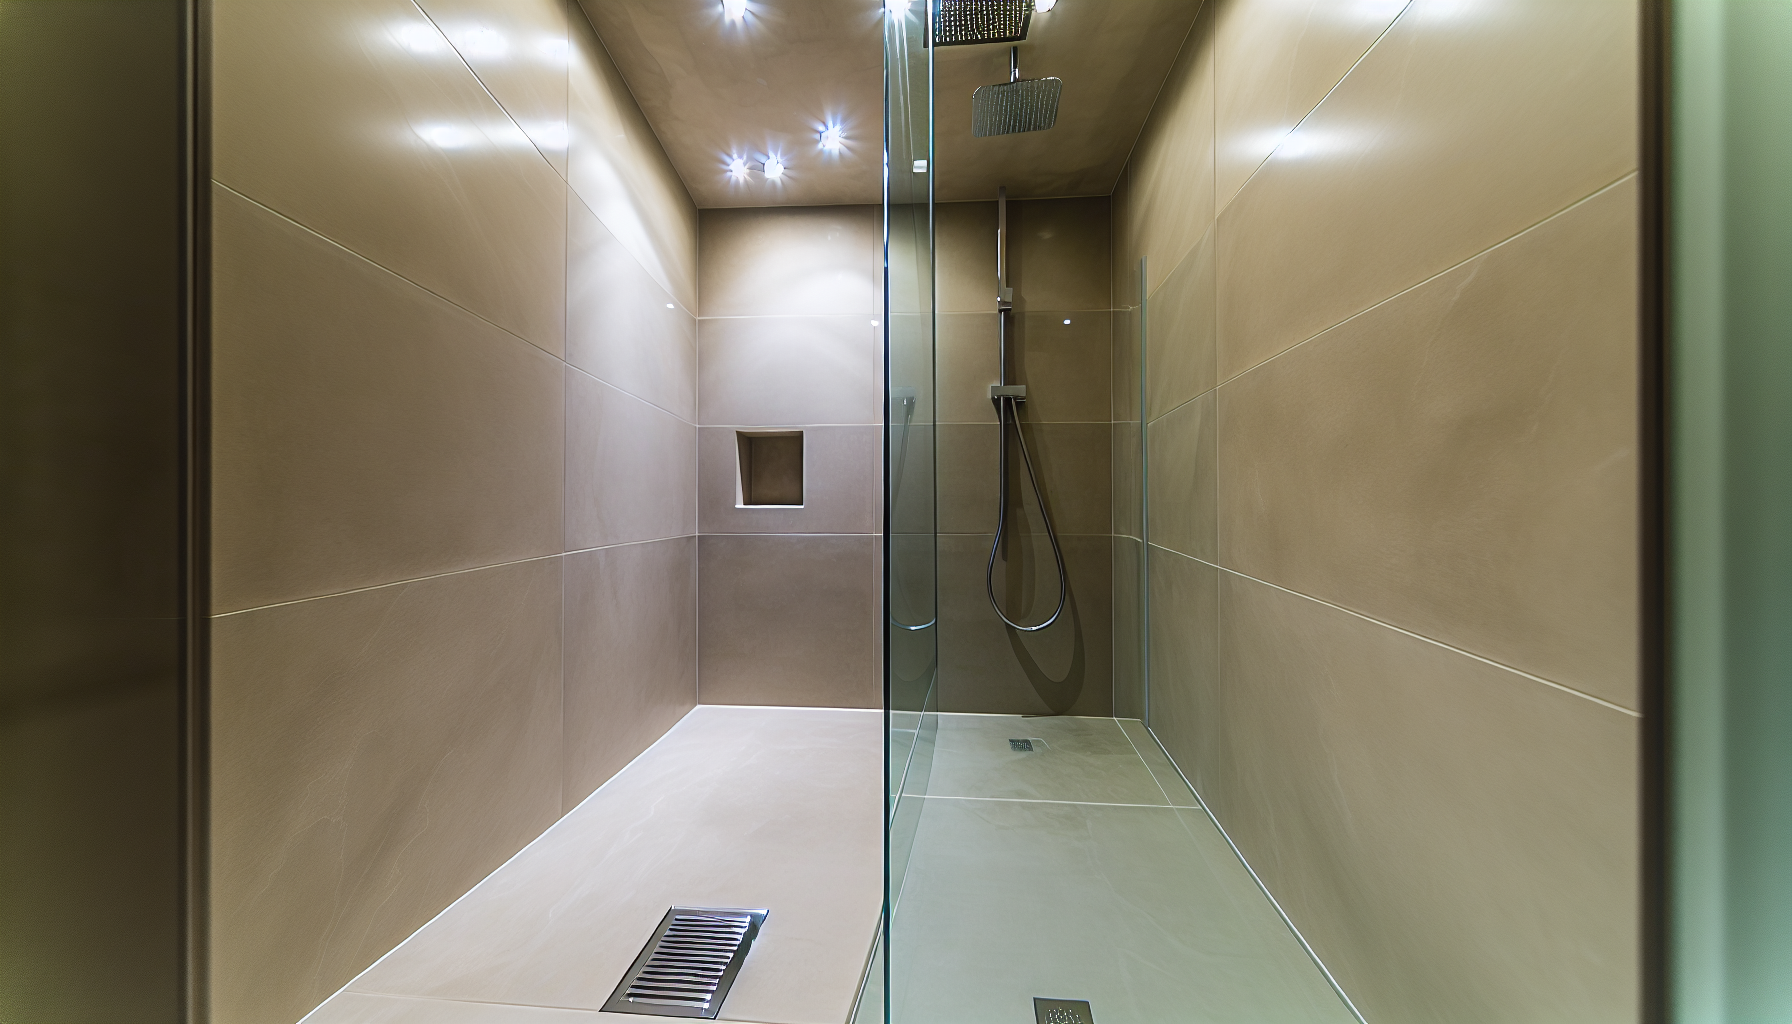 Eine moderne bodengleiche Dusche mit Glaswand und Ablaufrinne